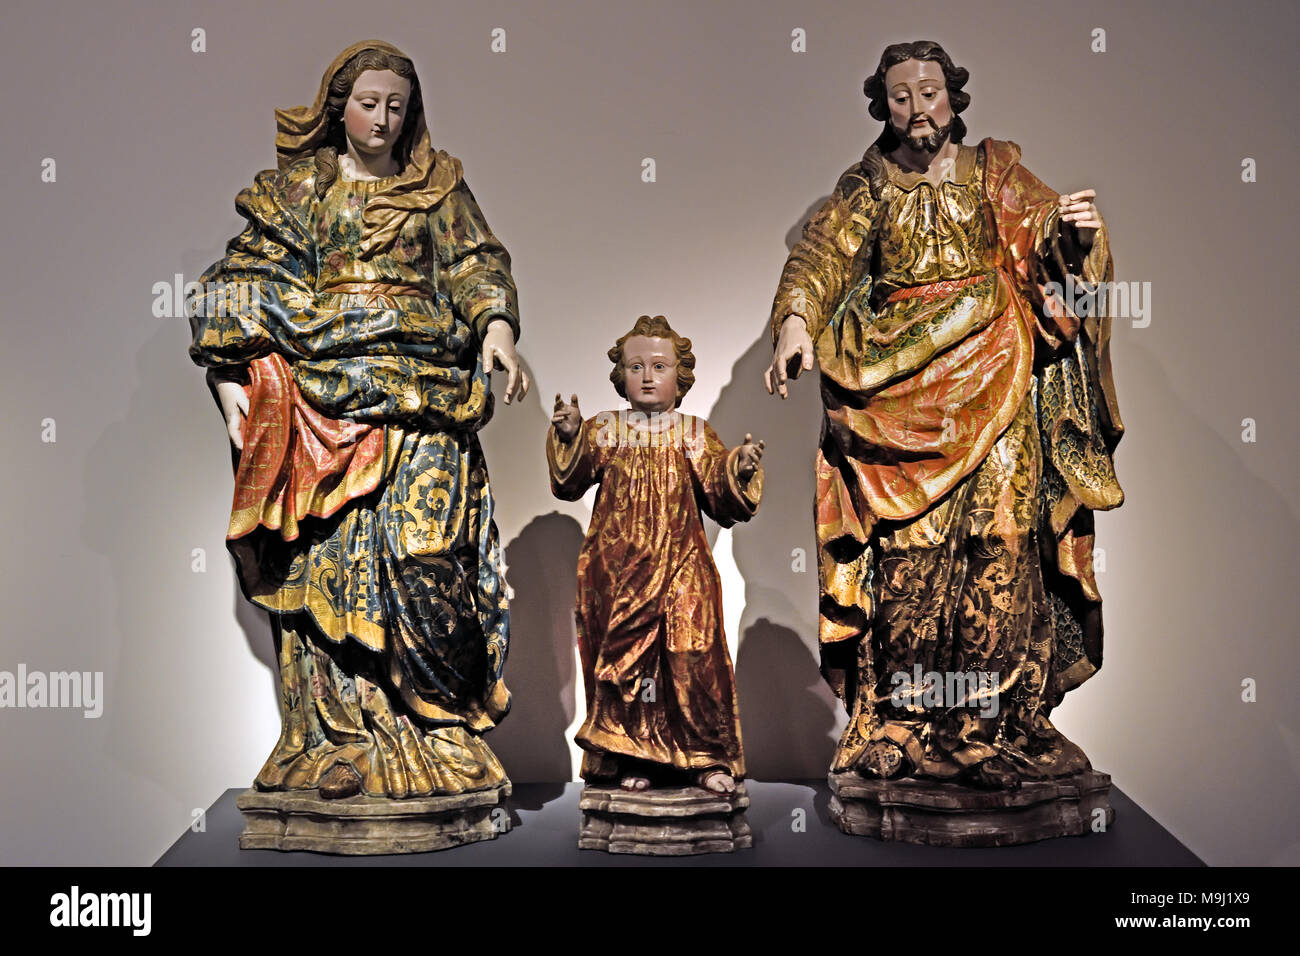 Sacra Famiglia del xviii secolo portoghese Portogallo Coimbra ( Convento de Santa Teresa - Convento di Santa Teresa ) Foto Stock